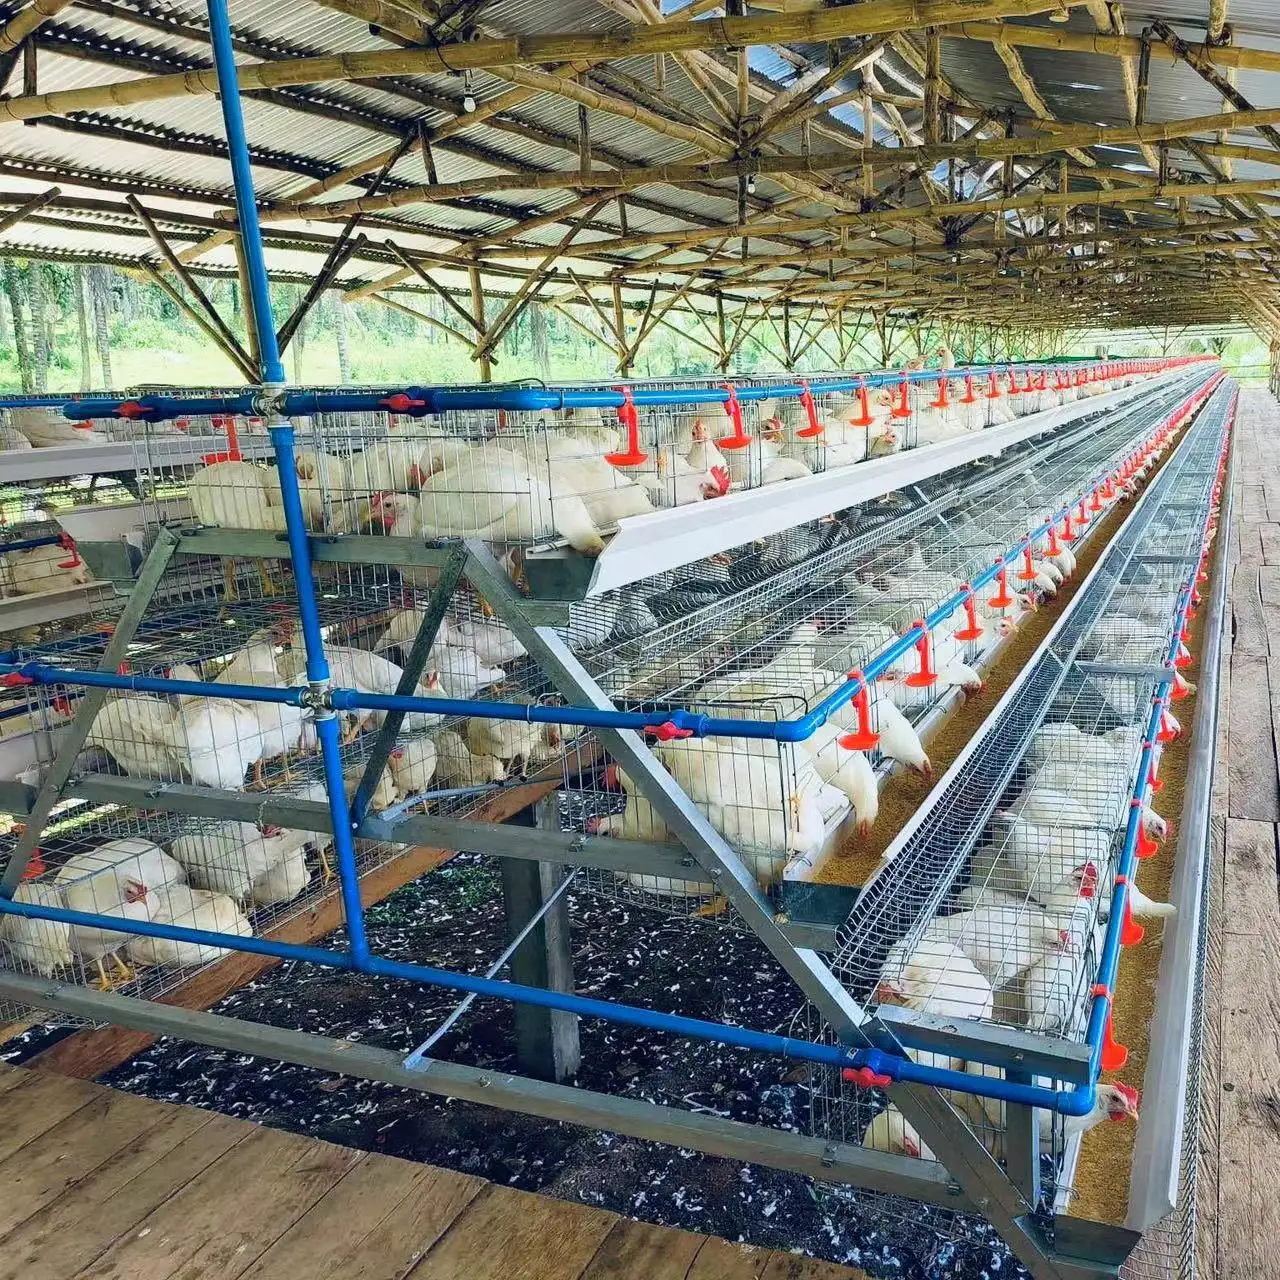 Buena calidad, uso duradero-Vida útil 3 niveles 120 pájaros jaula de pollo galvanizada en caliente